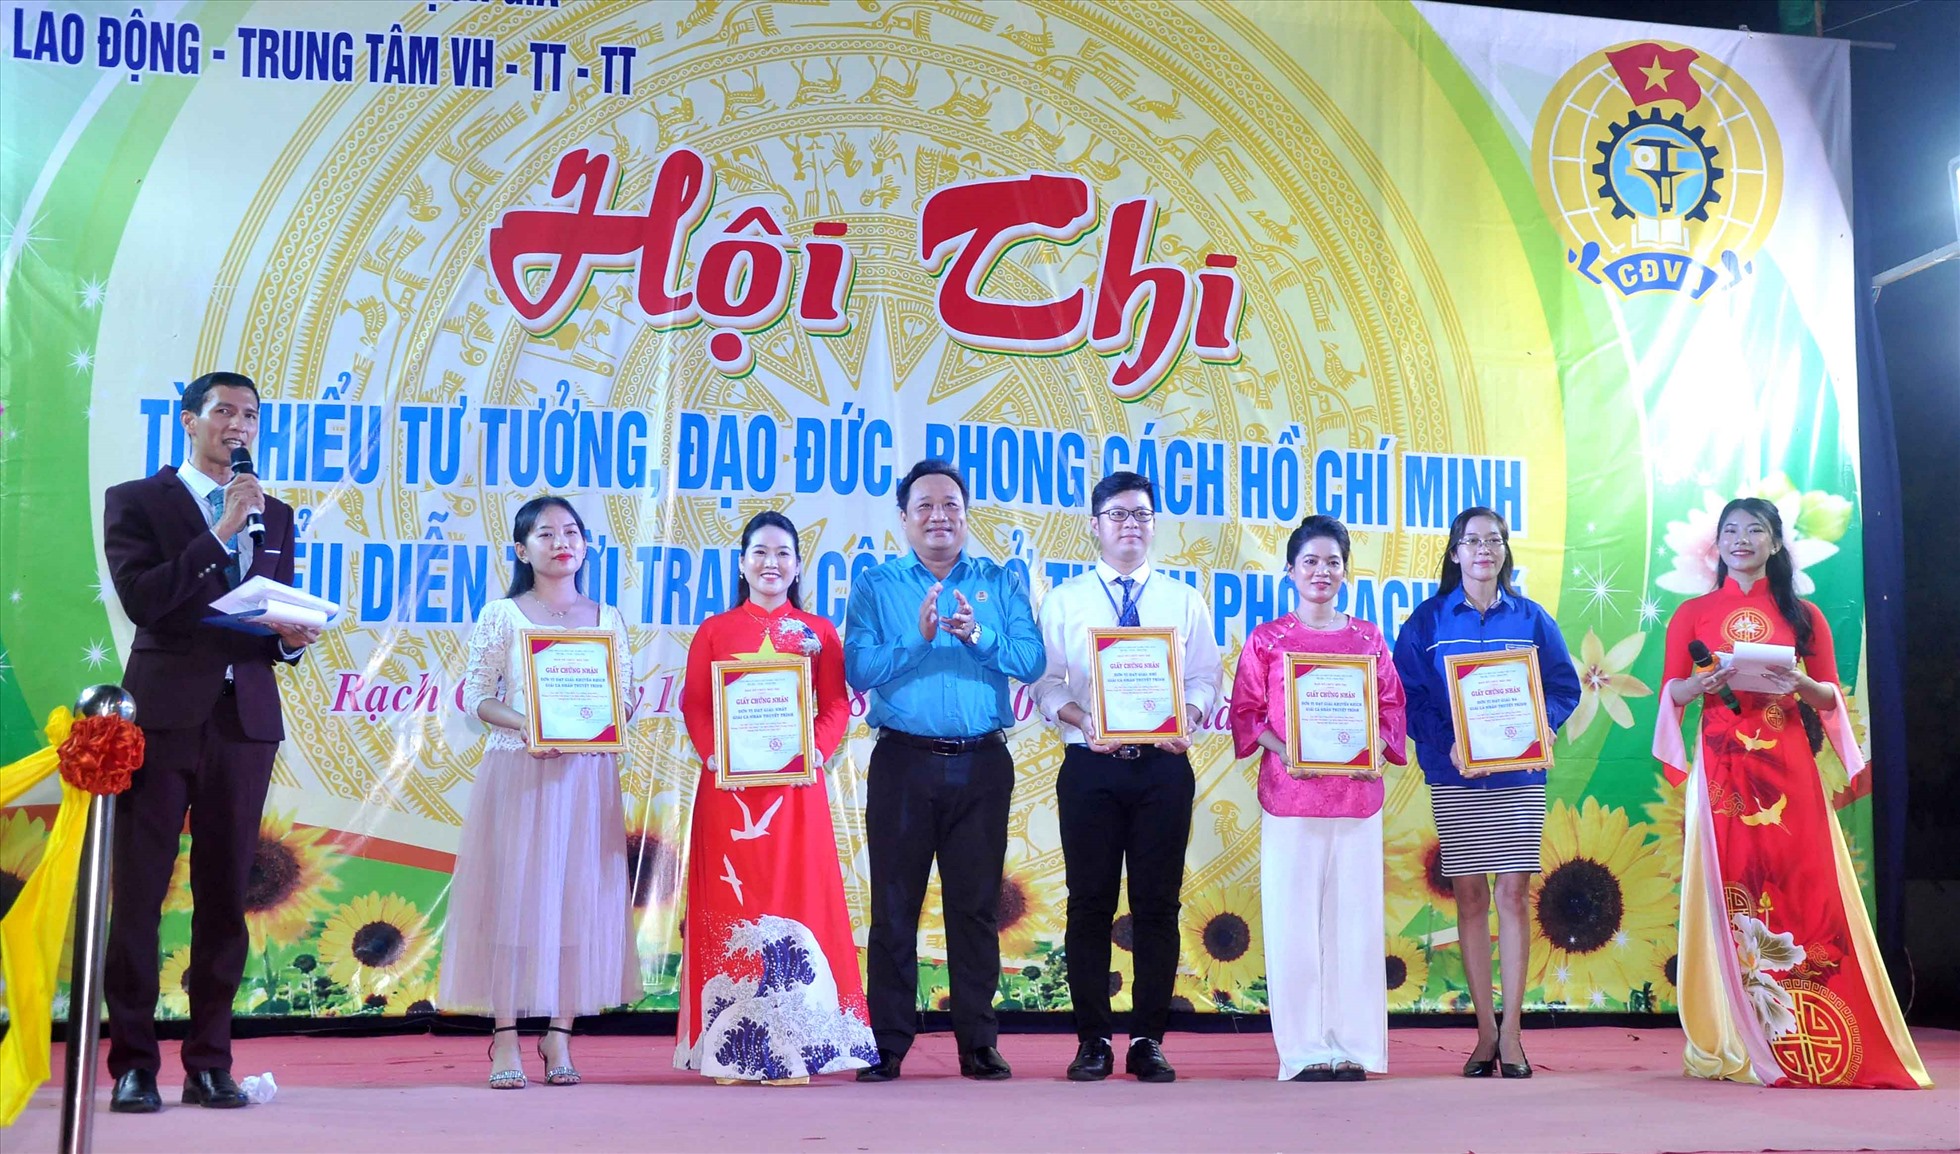 Ông Phạm Văn Đằng, Phó Chủ tịch LĐLĐ TP Rạch Giá trao thưởng cho các tập thể, cá nhân đạt thành tích cao tại hội thi. Ảnh: LĐLĐ TP Rạch Giá